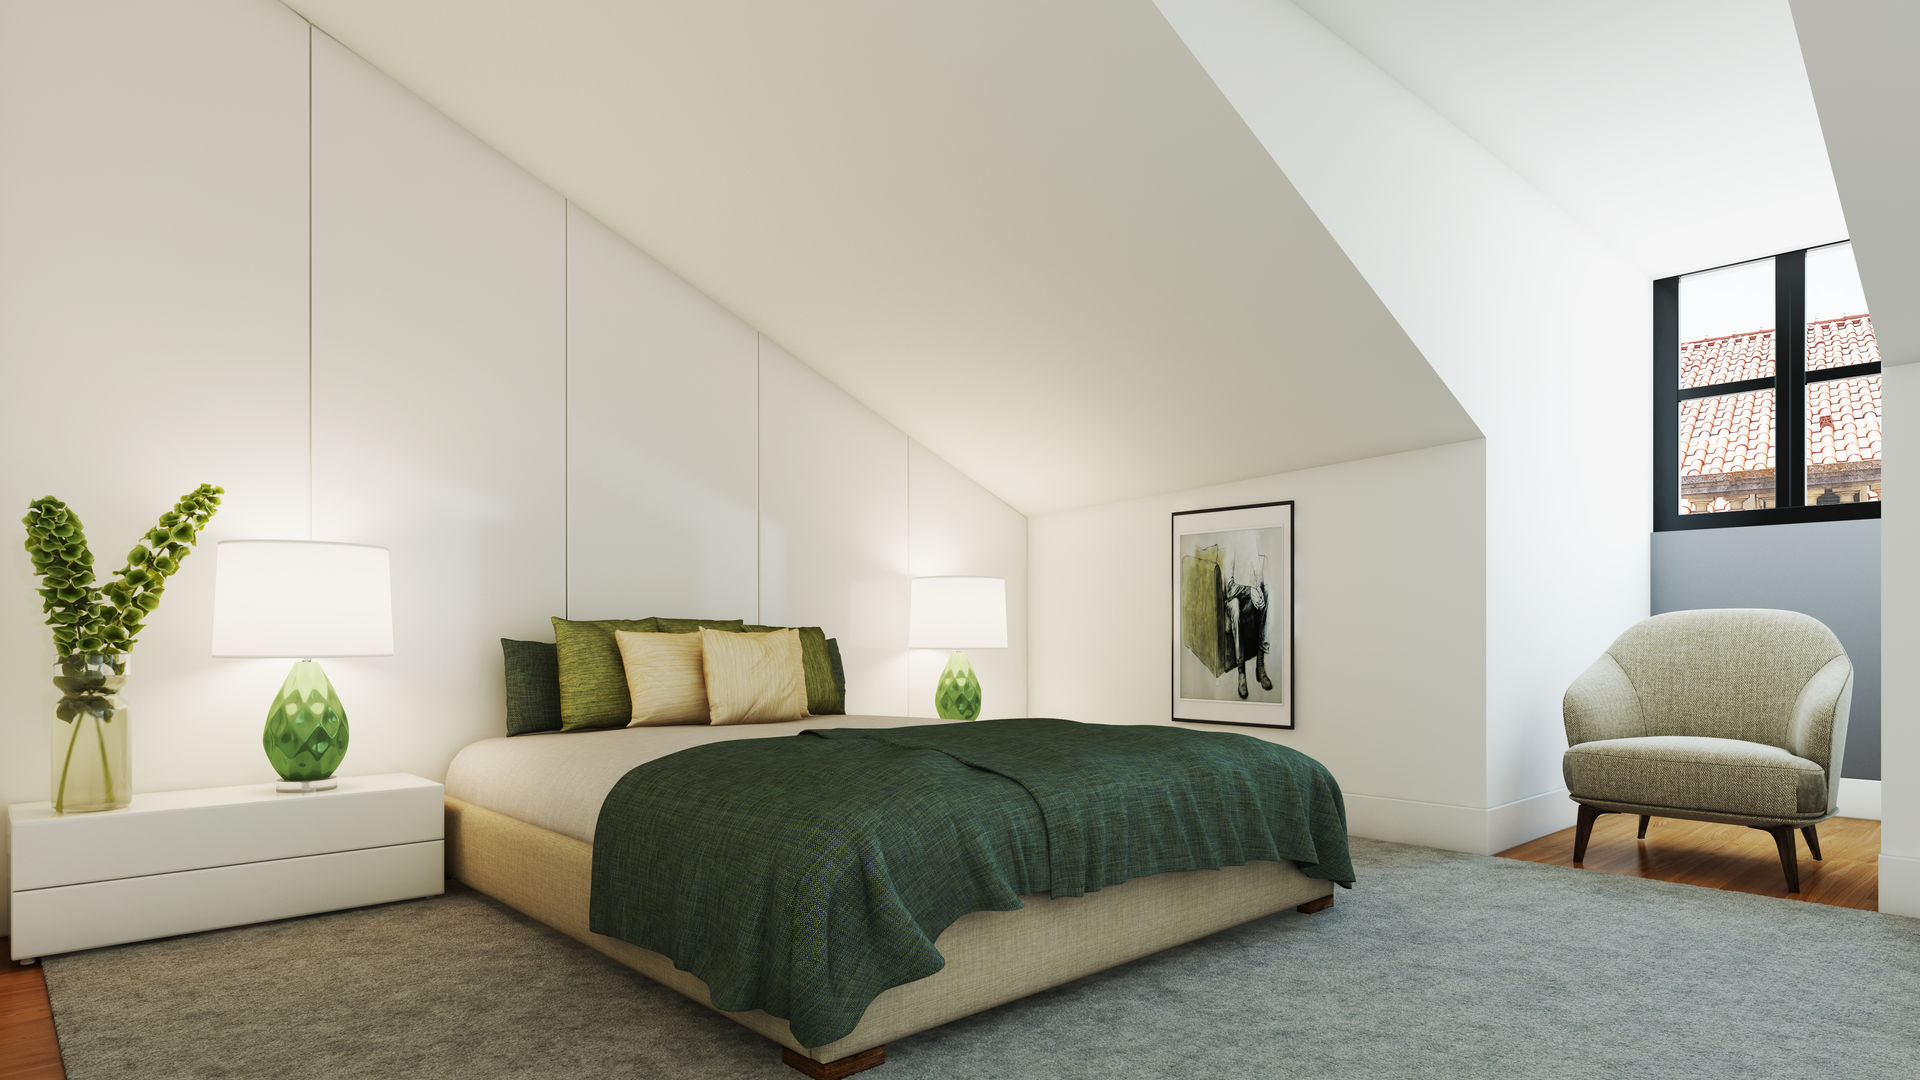 Suite Architecture TOTE SER Minimalist bedroom suite